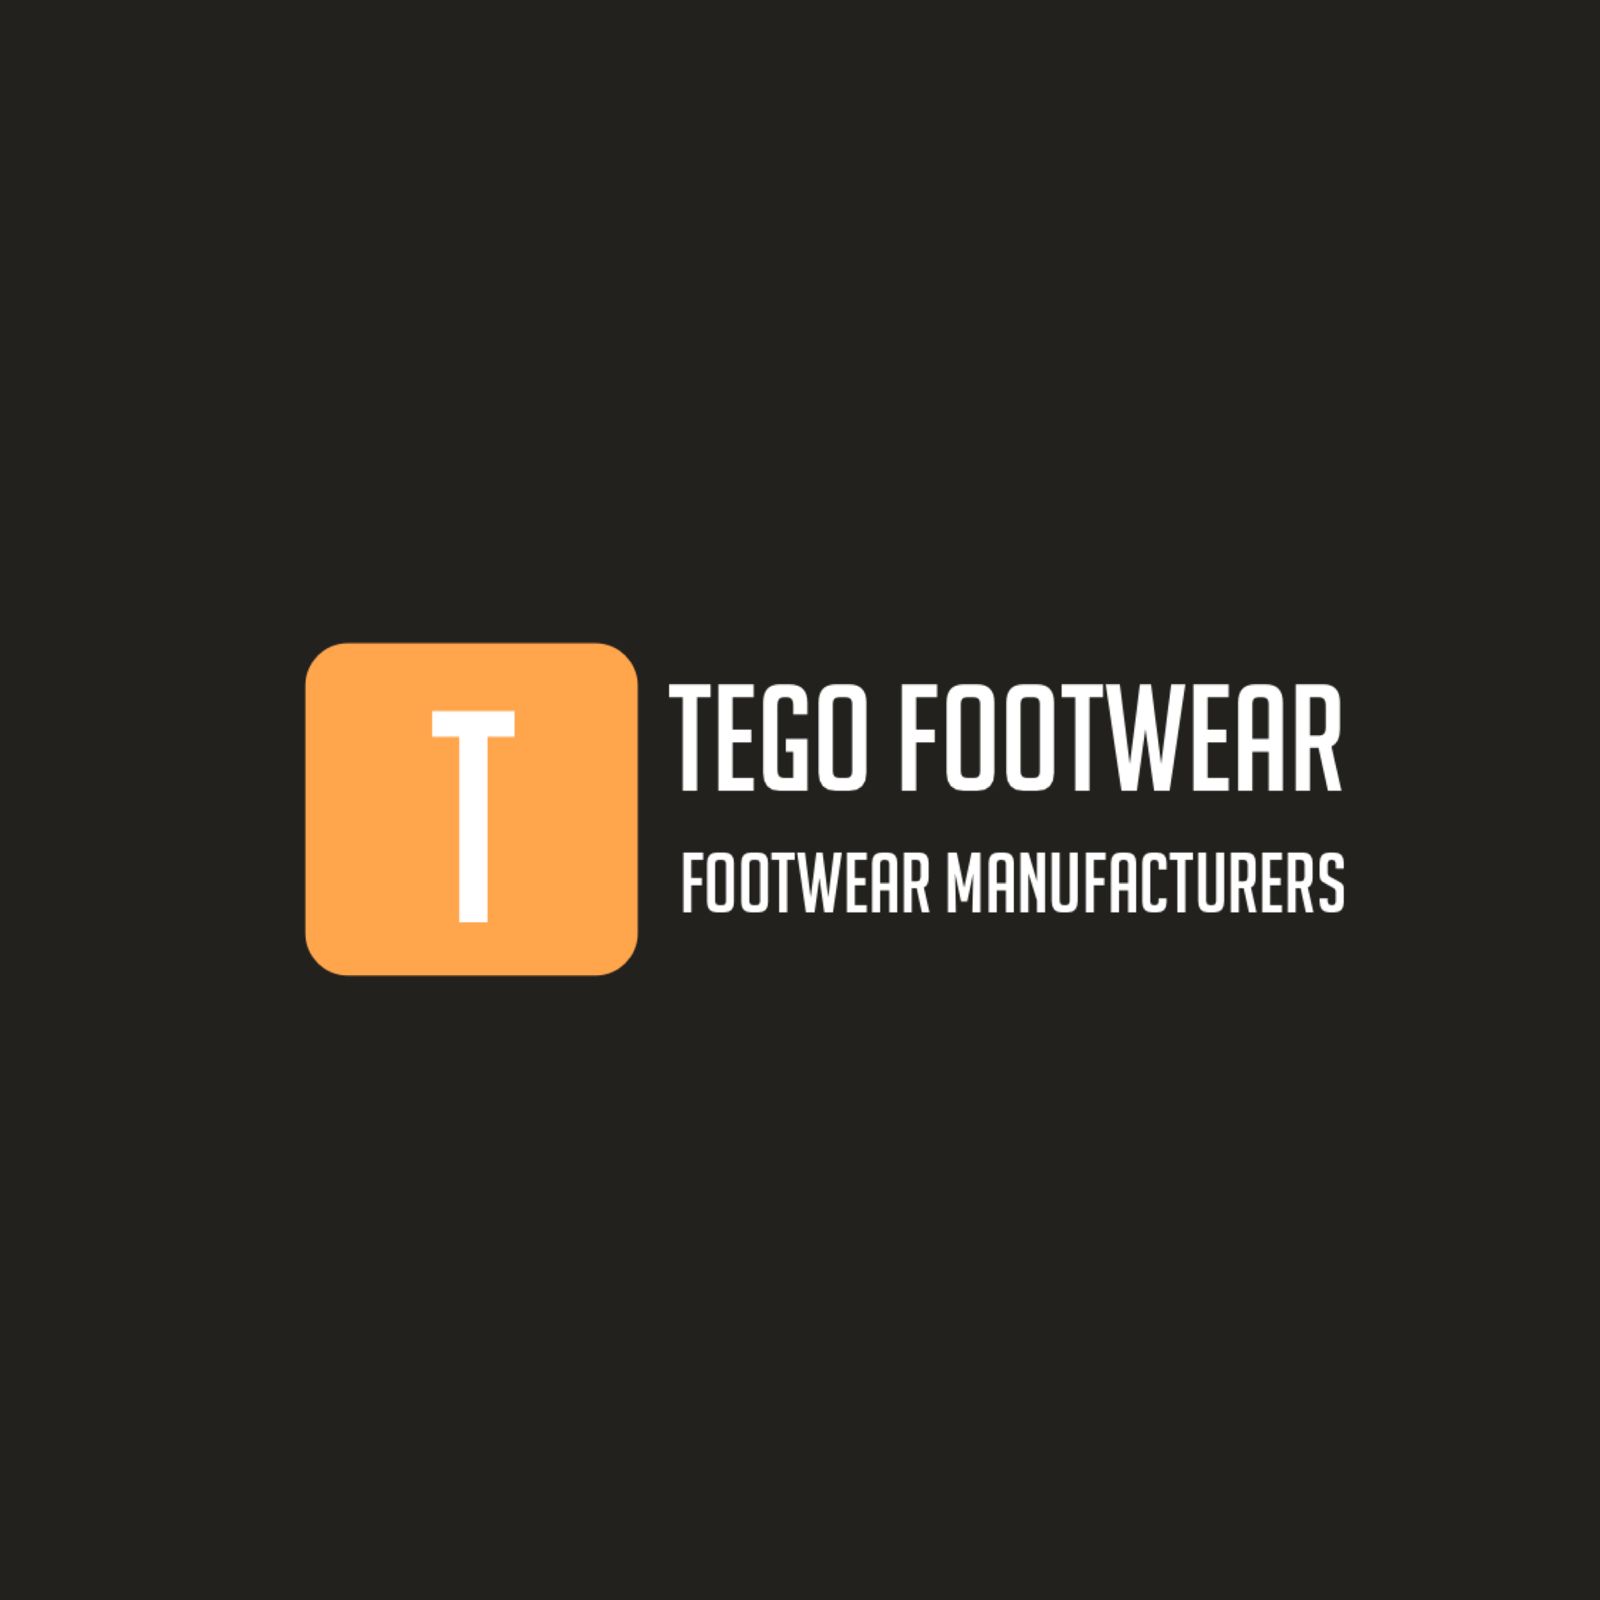 Tego footwear logo